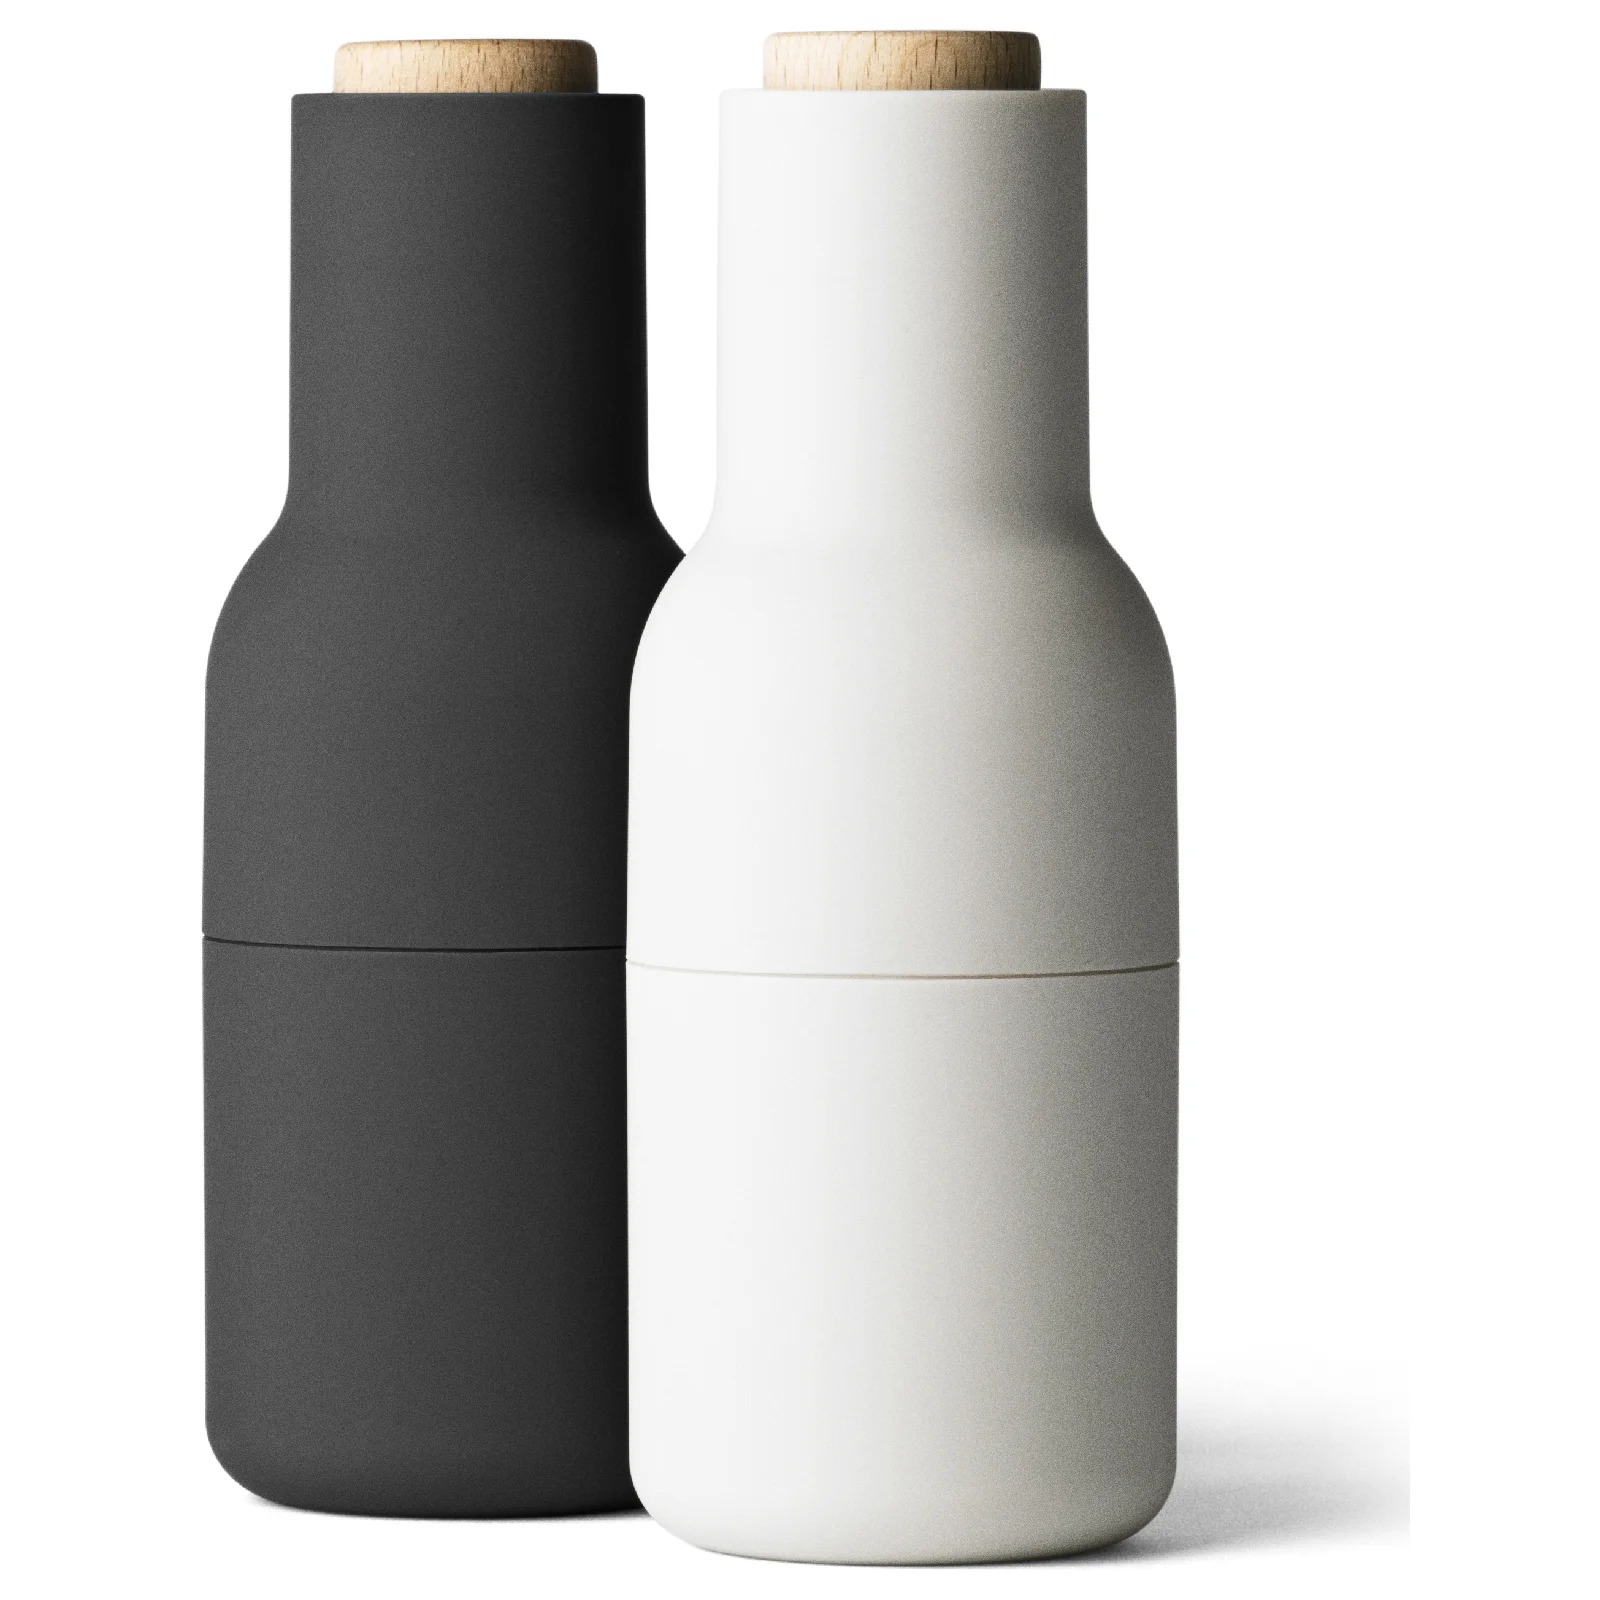 Audo Bottle Grinder - Ash/Carbon - Set of 2 Image 1